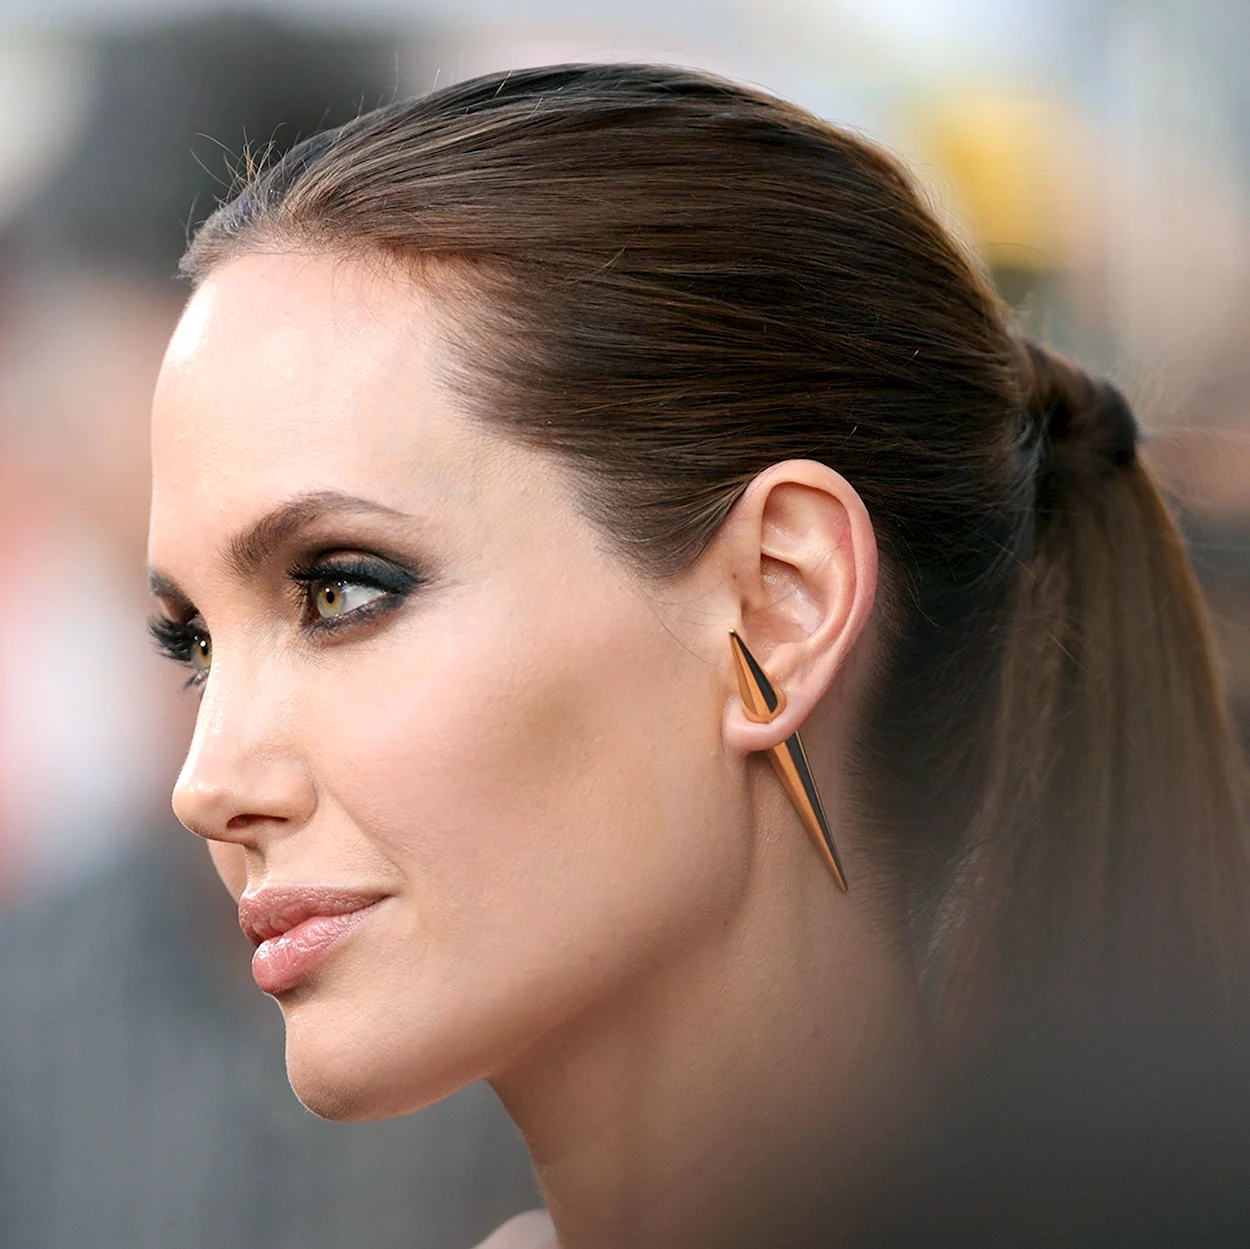 Анджелина Джоли профиль. Красивая девушка